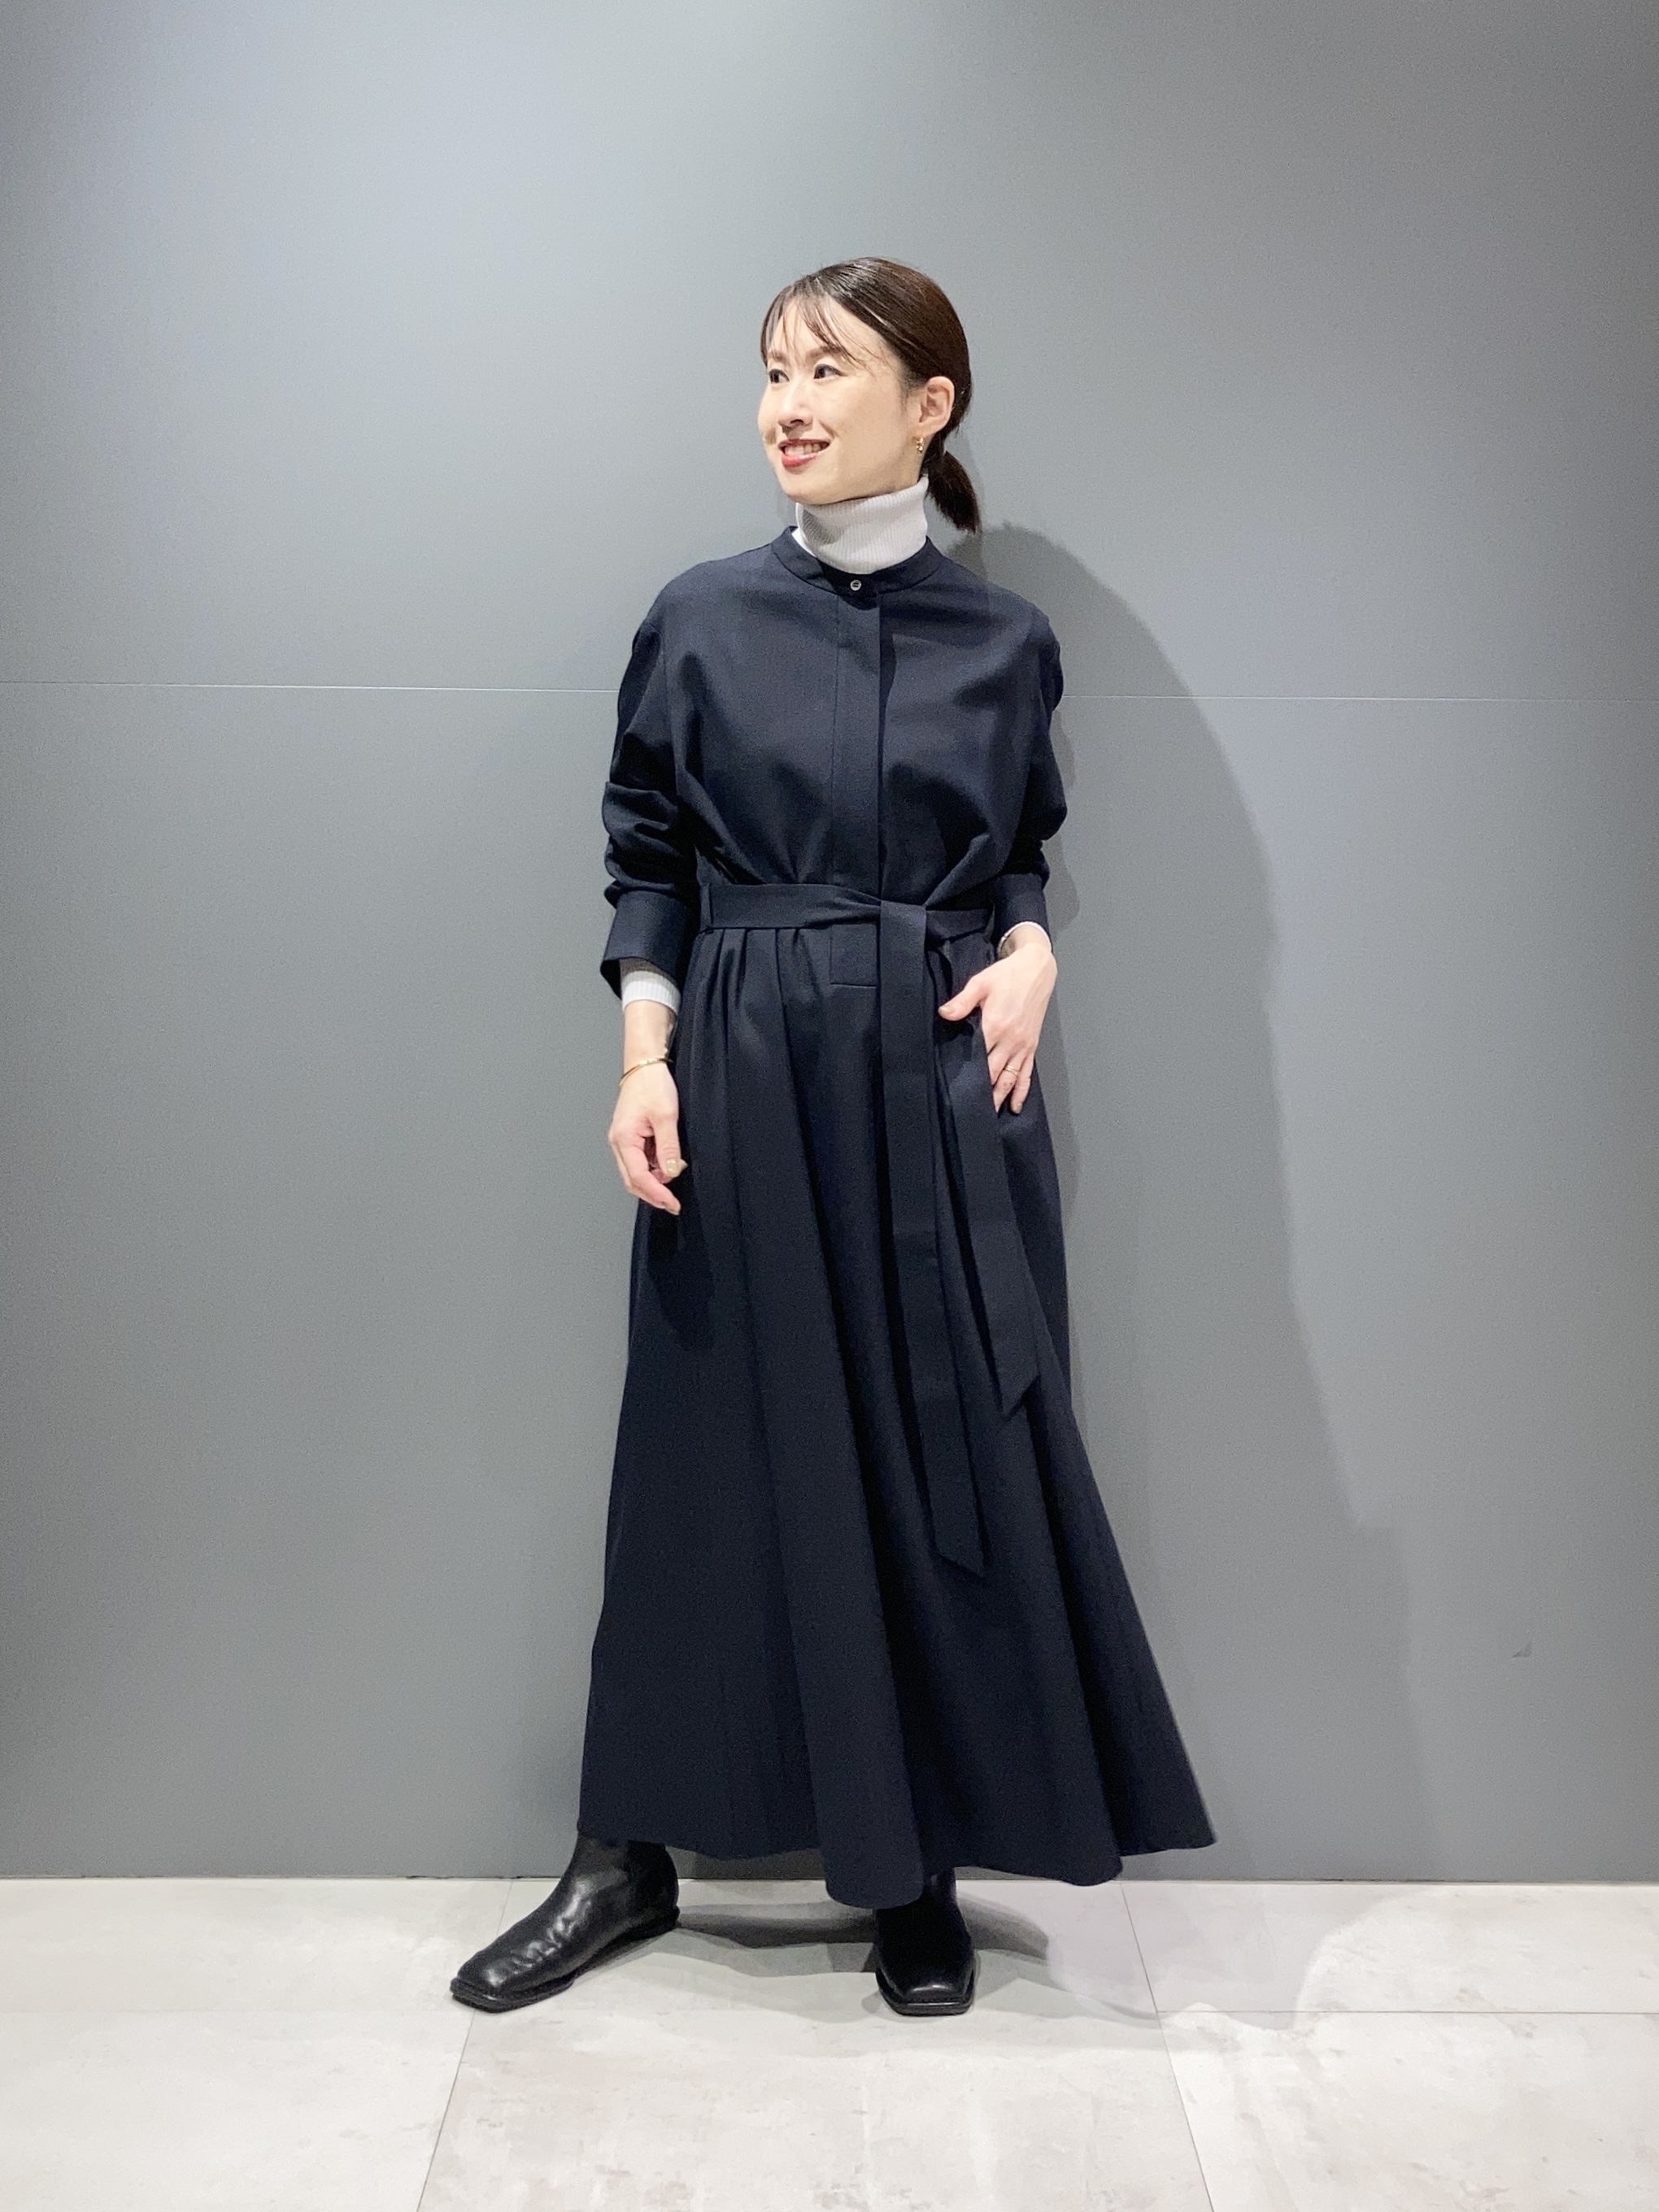 エレガントなシャツドレス | セオリーリュクス | 大丸梅田店公式 SHOP BLOG